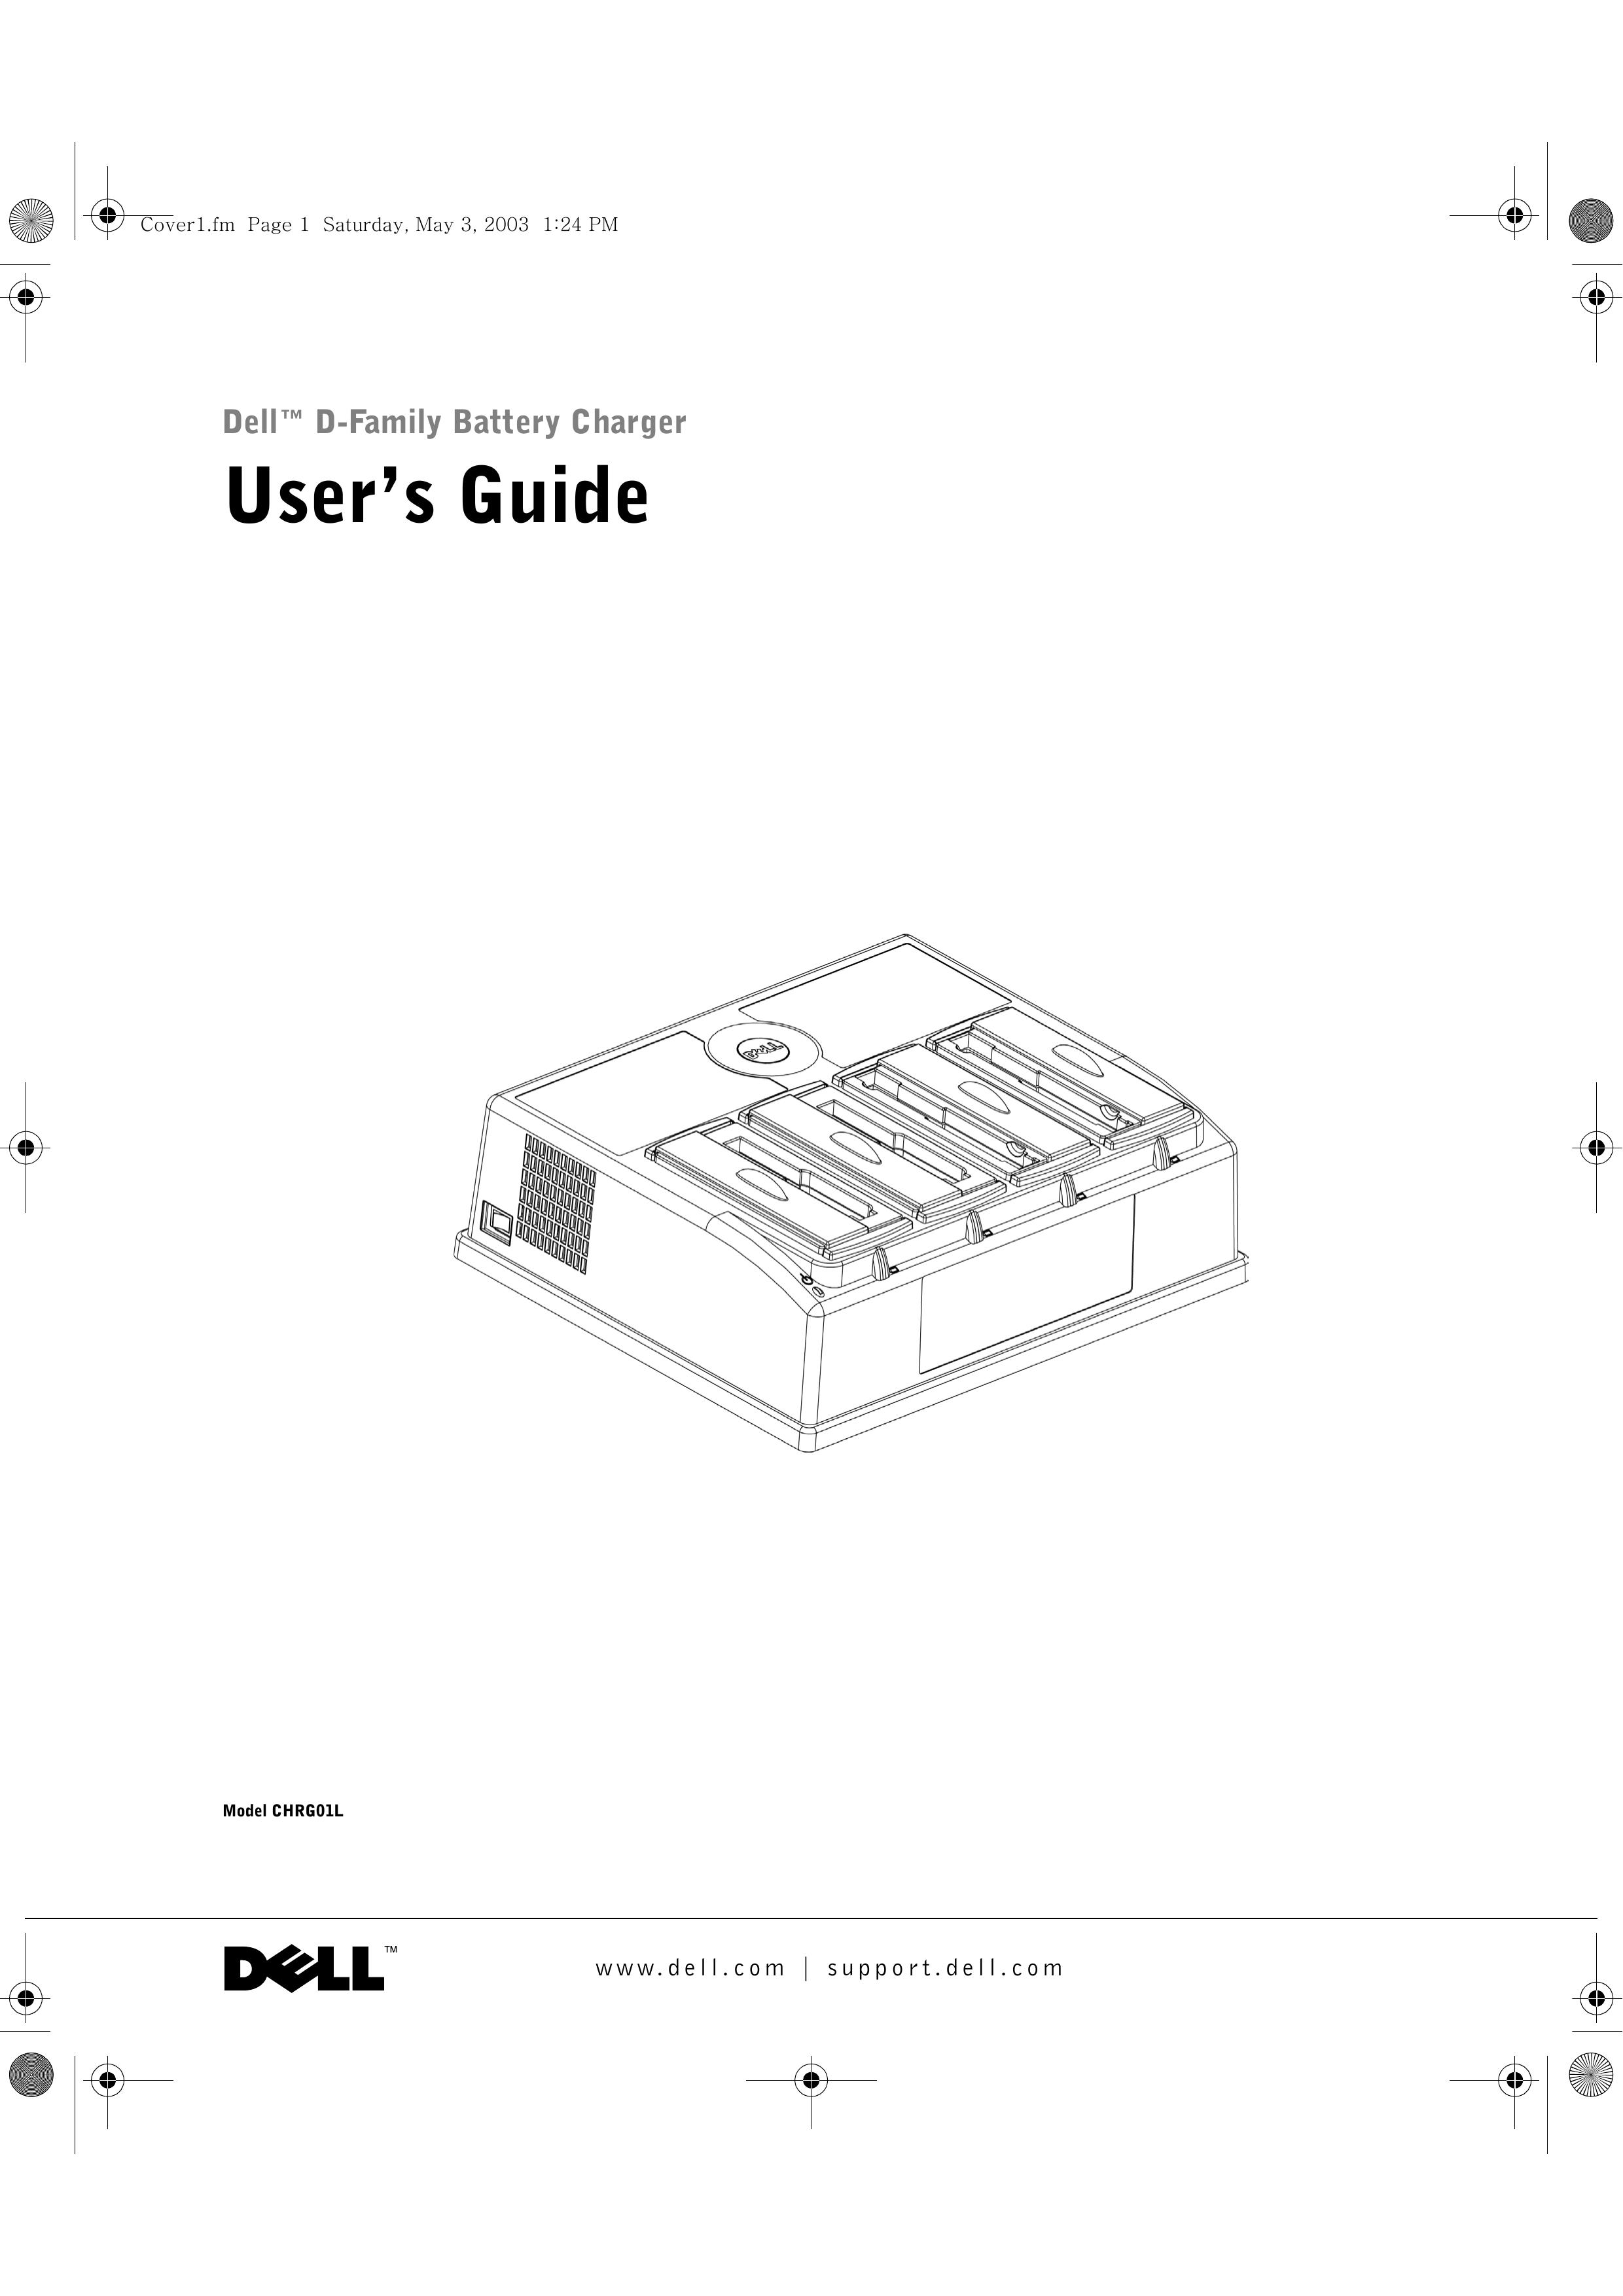 3Com CHRG01L Refrigerator User Manual